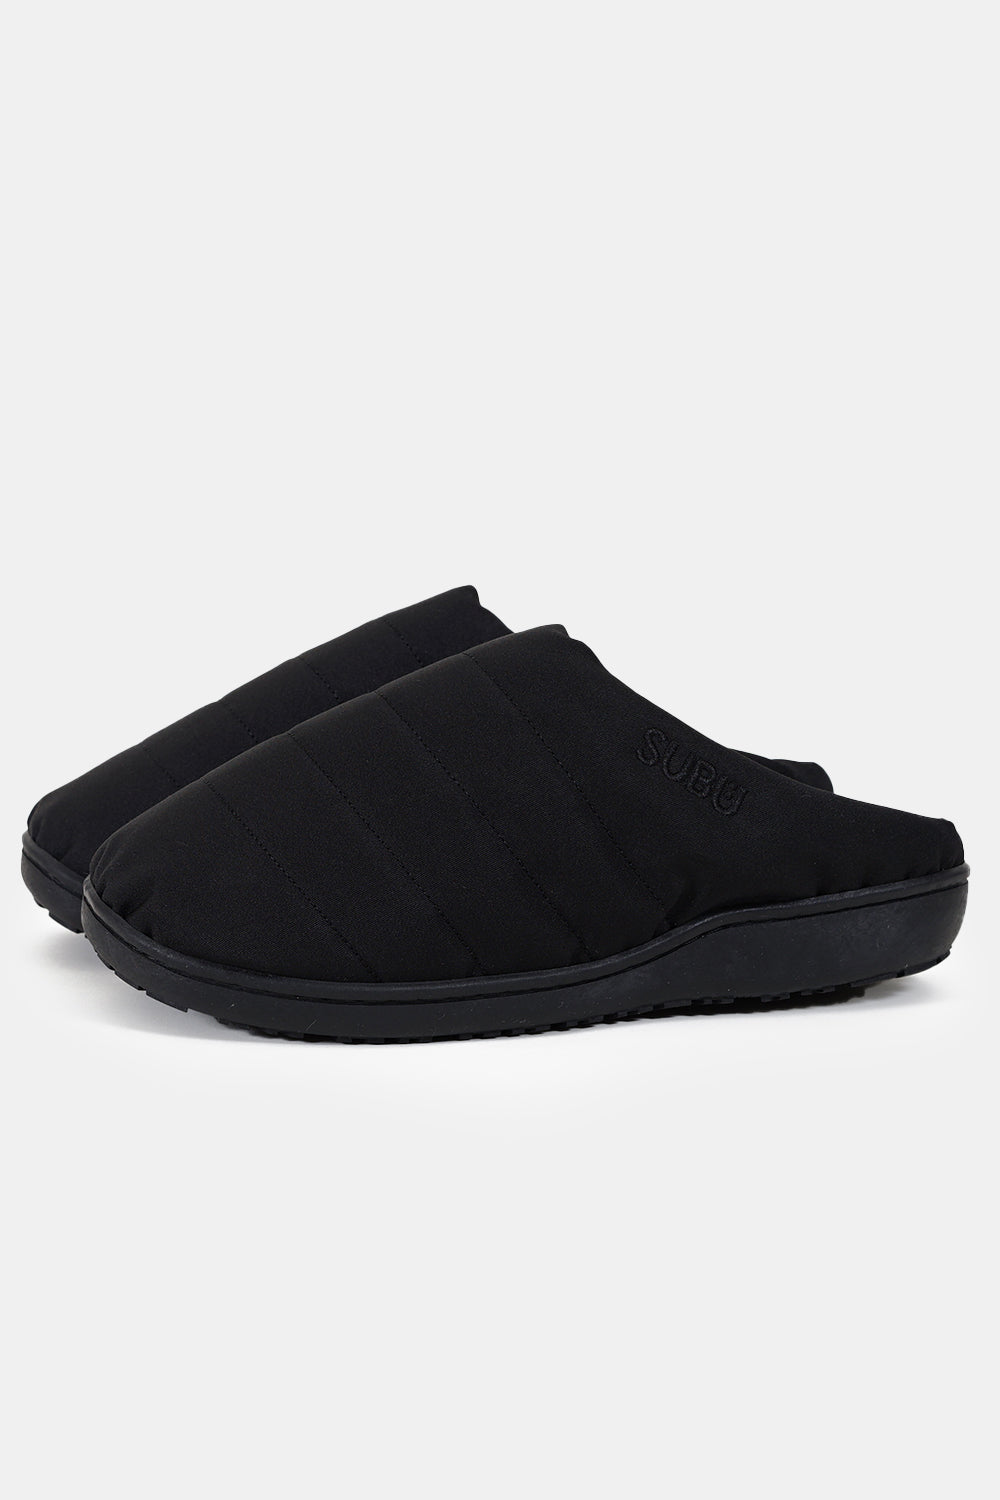 SUBU Indoor Outdoor Nannen Slippers (Black)